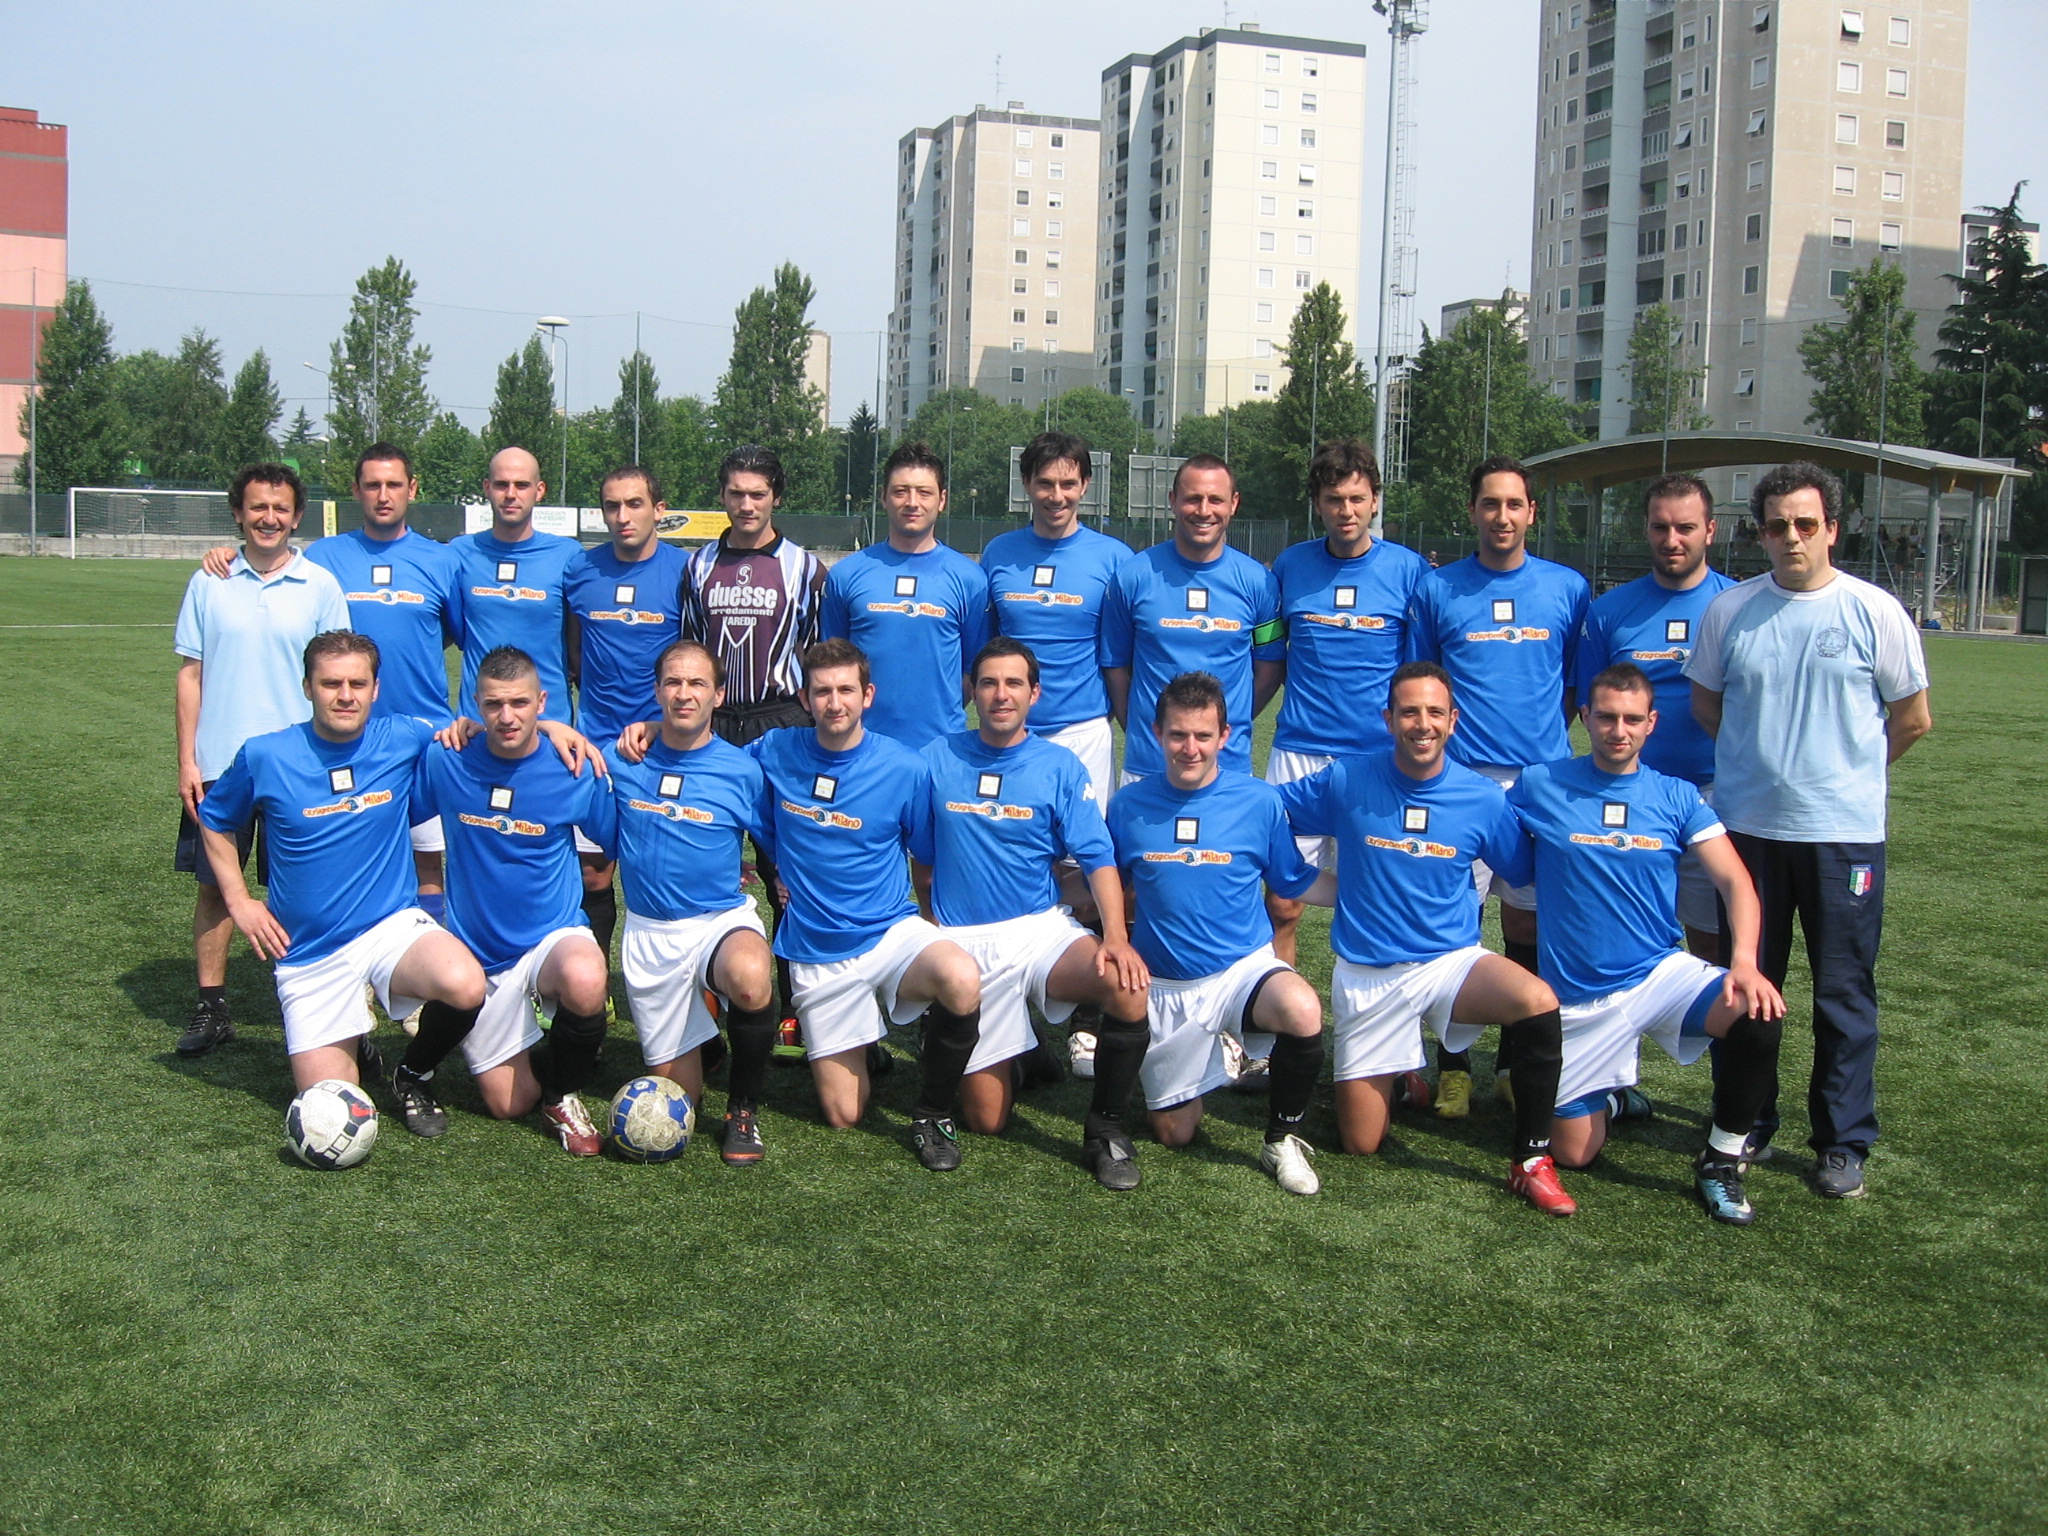 La squadra Campione 2010/11